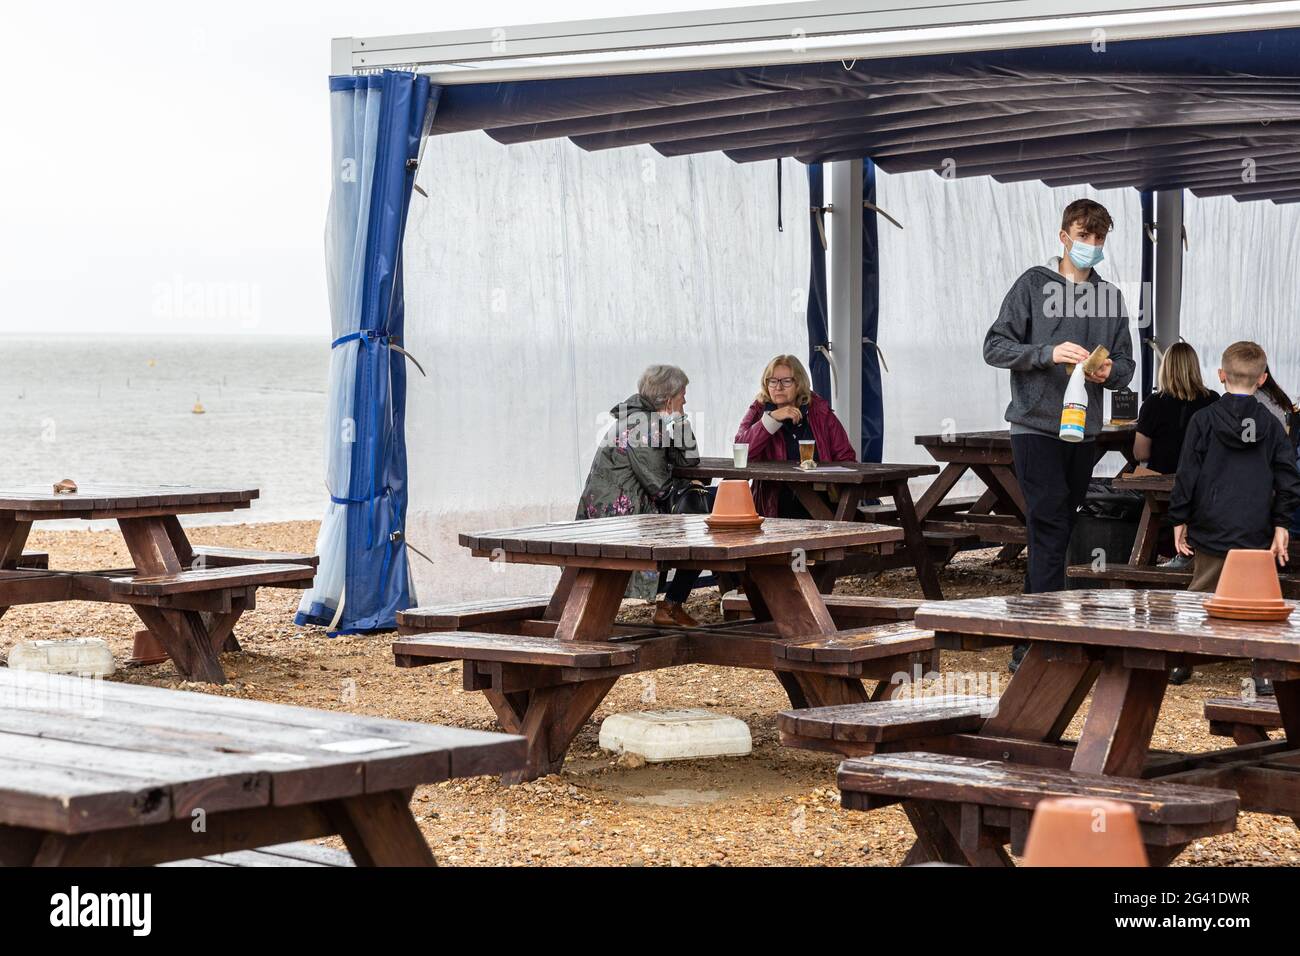 Whitstable, Royaume-Uni, 18 juin 2021. Les gens s'assoient dans un restaurant en plein air à la plage de Whitstable, une ville touristique côtière du sud-est de l'Angleterre, car le mauvais temps pluvieux perturbe les vacanciers au début de la période des fêtes. L'un des blocages les plus stricts du coronavirus dans le monde est en partie levé lorsque le Royaume-Uni est parvenu à vacciner une grande partie de la population et que le nombre de cas de Covid est faible. Les gens sont en mesure de socialiser en nombre limité et de réserver des vacances. Banque D'Images